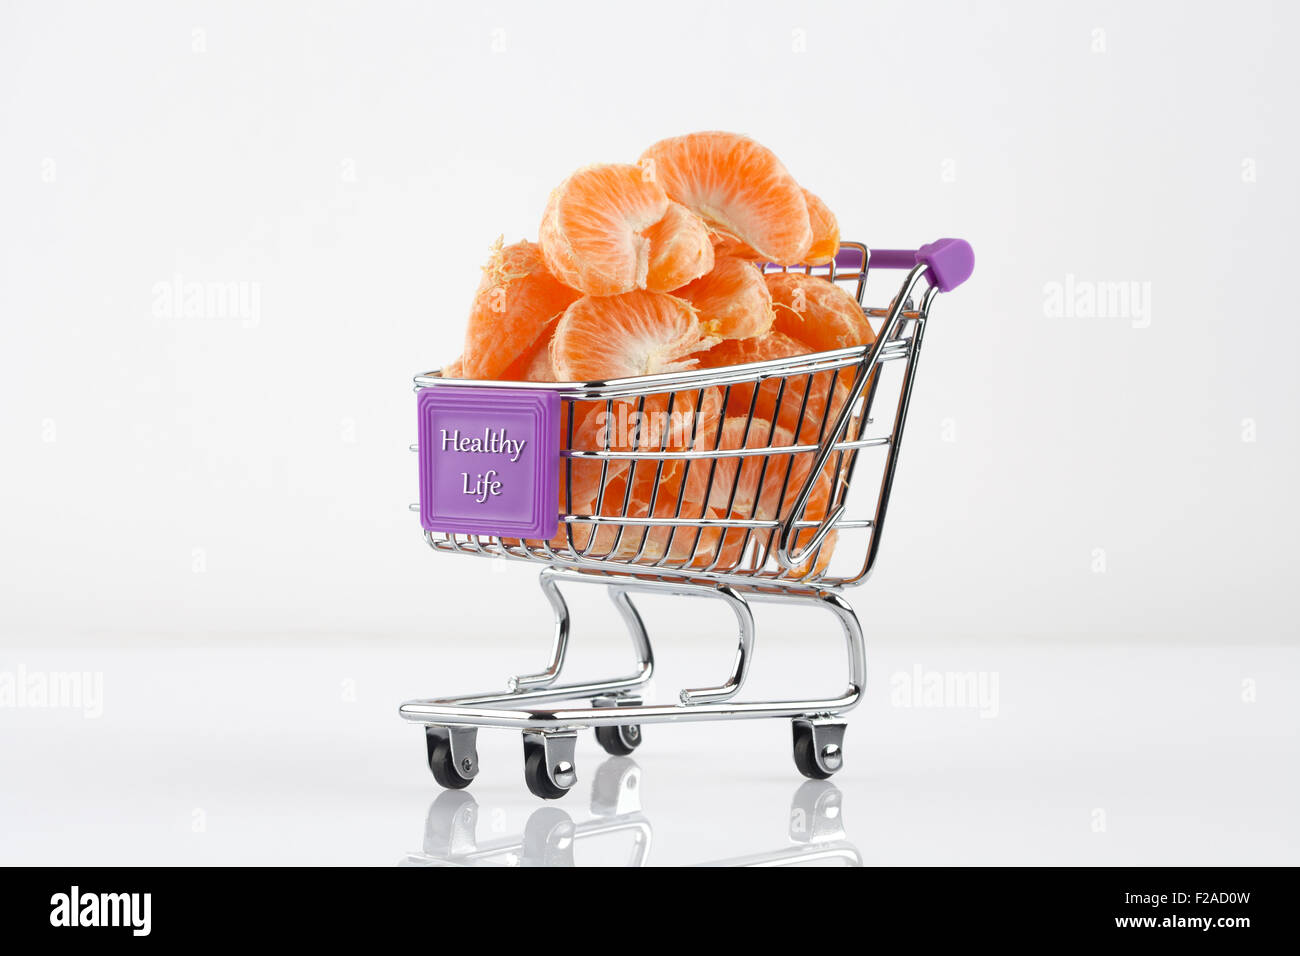 Toy panier rempli de tranches de mandarine - Alimentation saine notion Banque D'Images